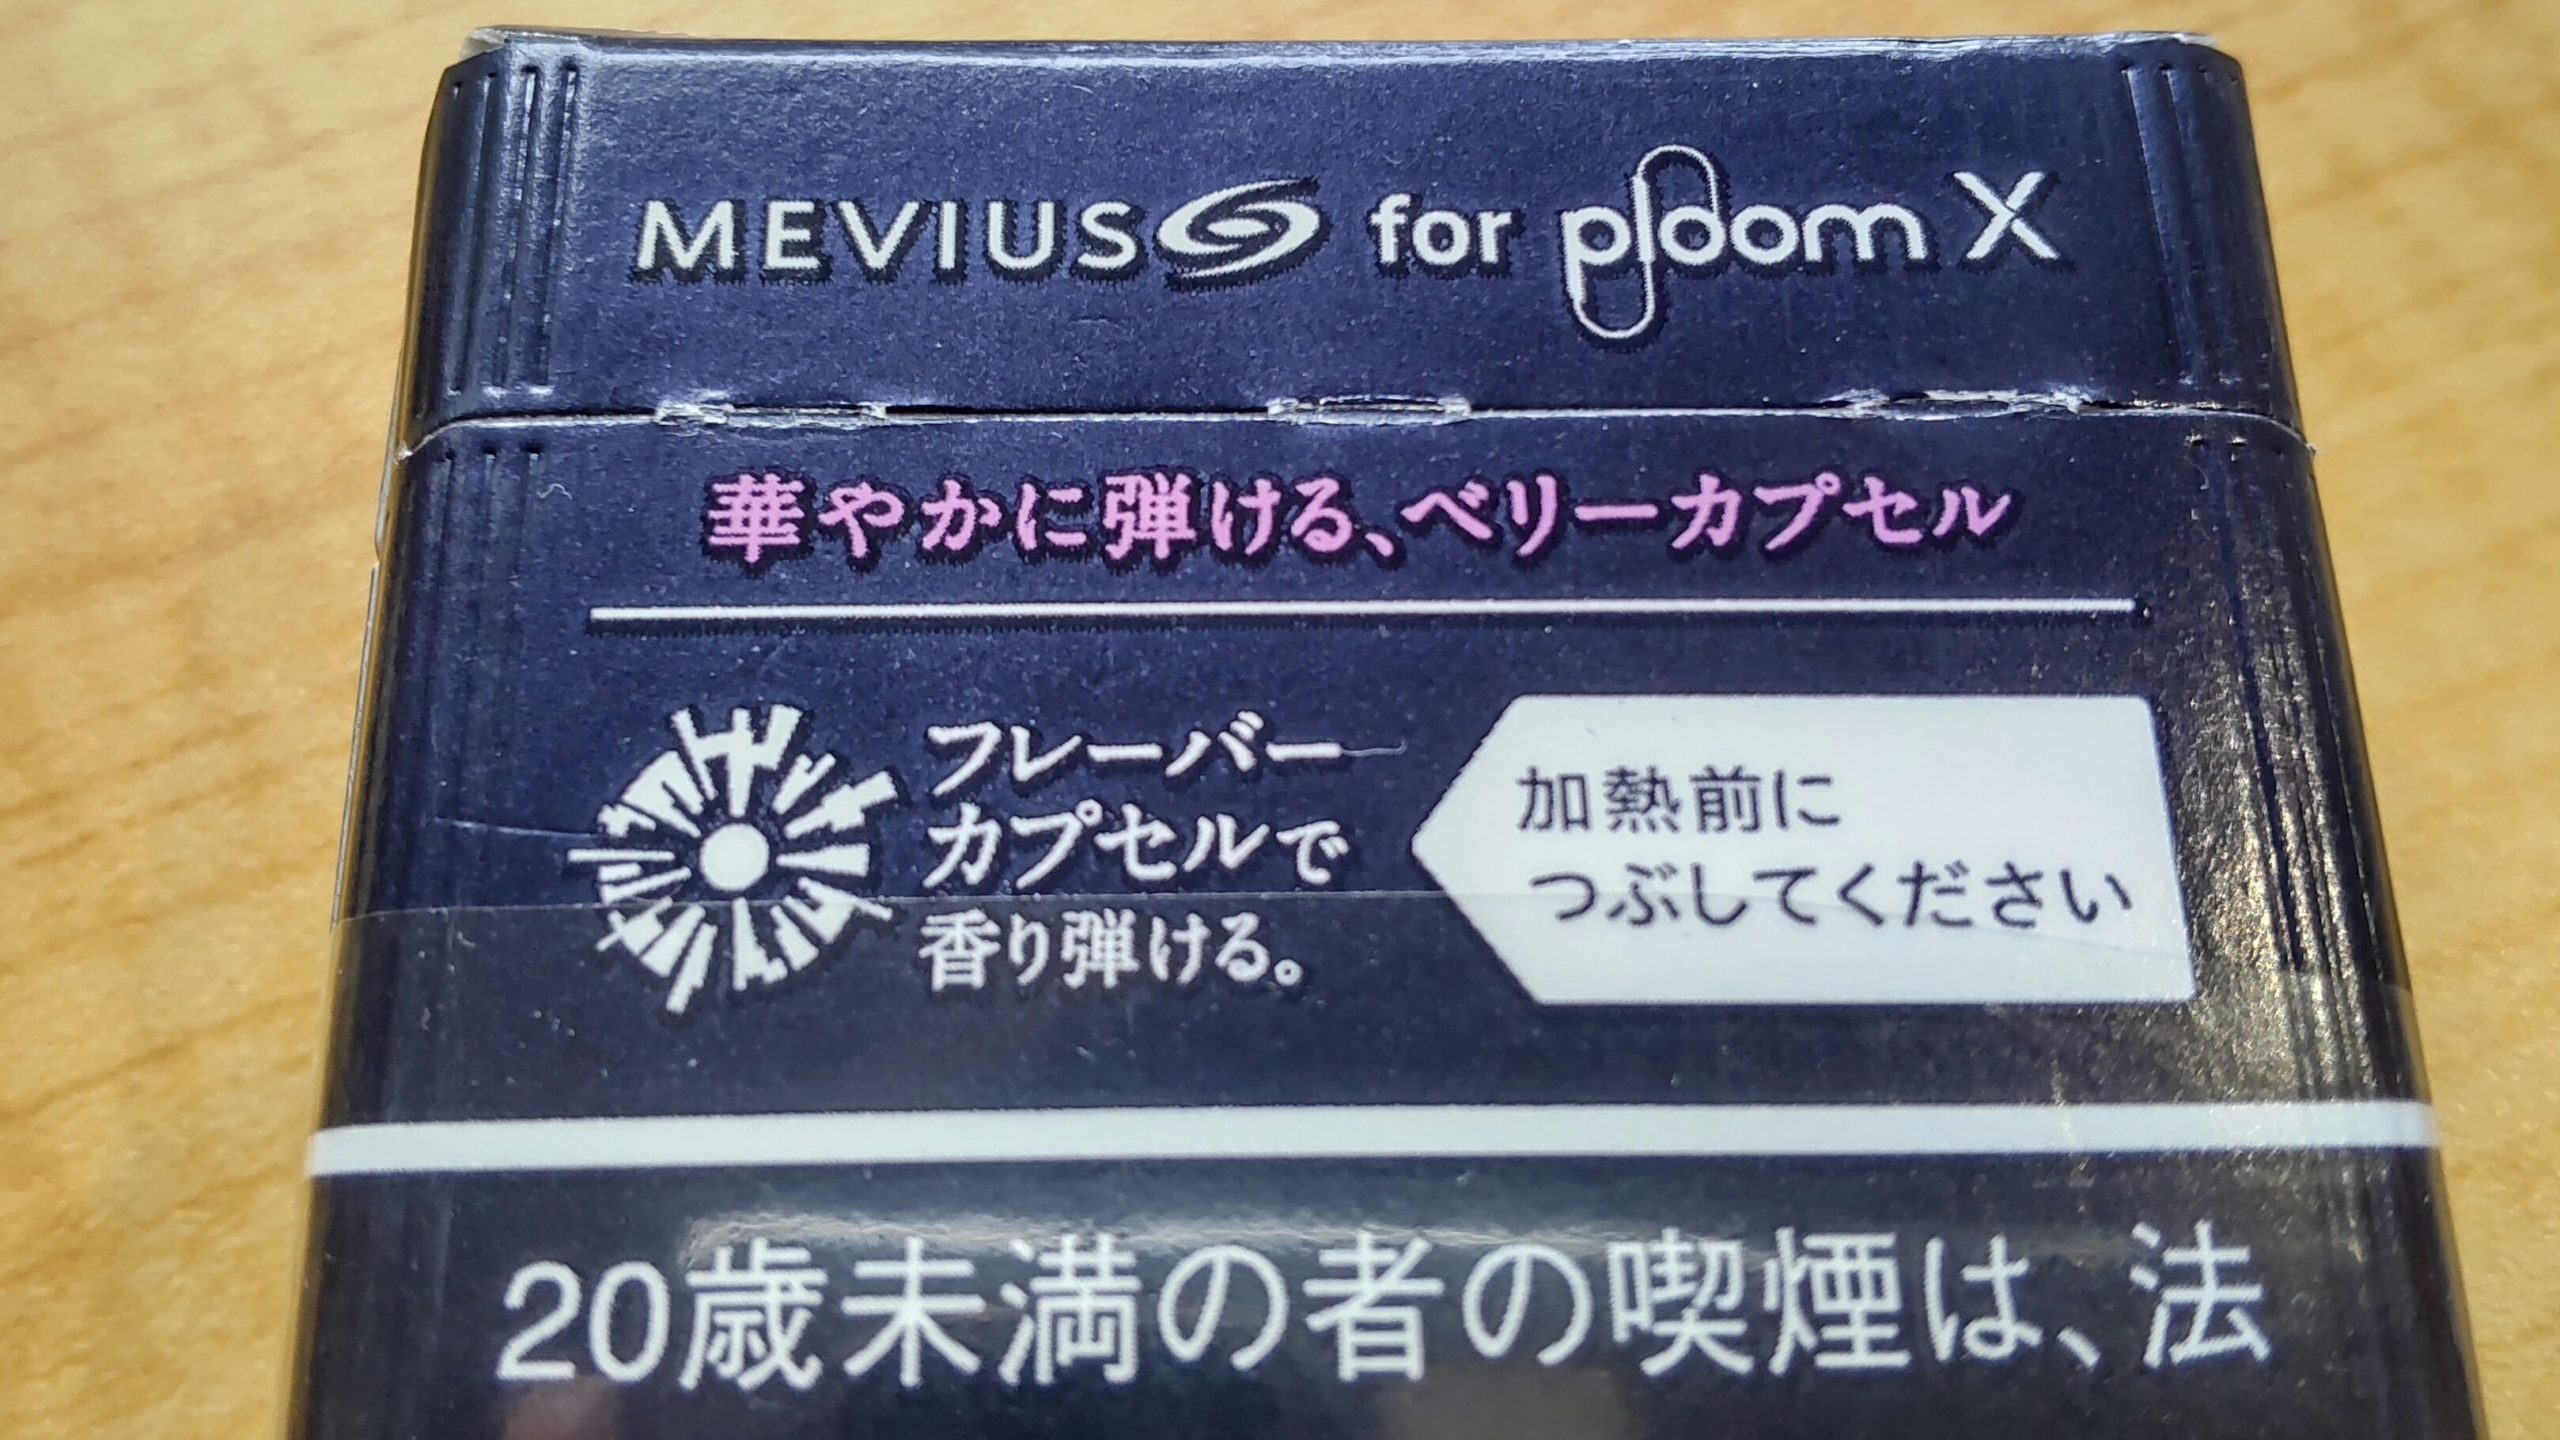 プルームXのメビウス・オプション・パープル味